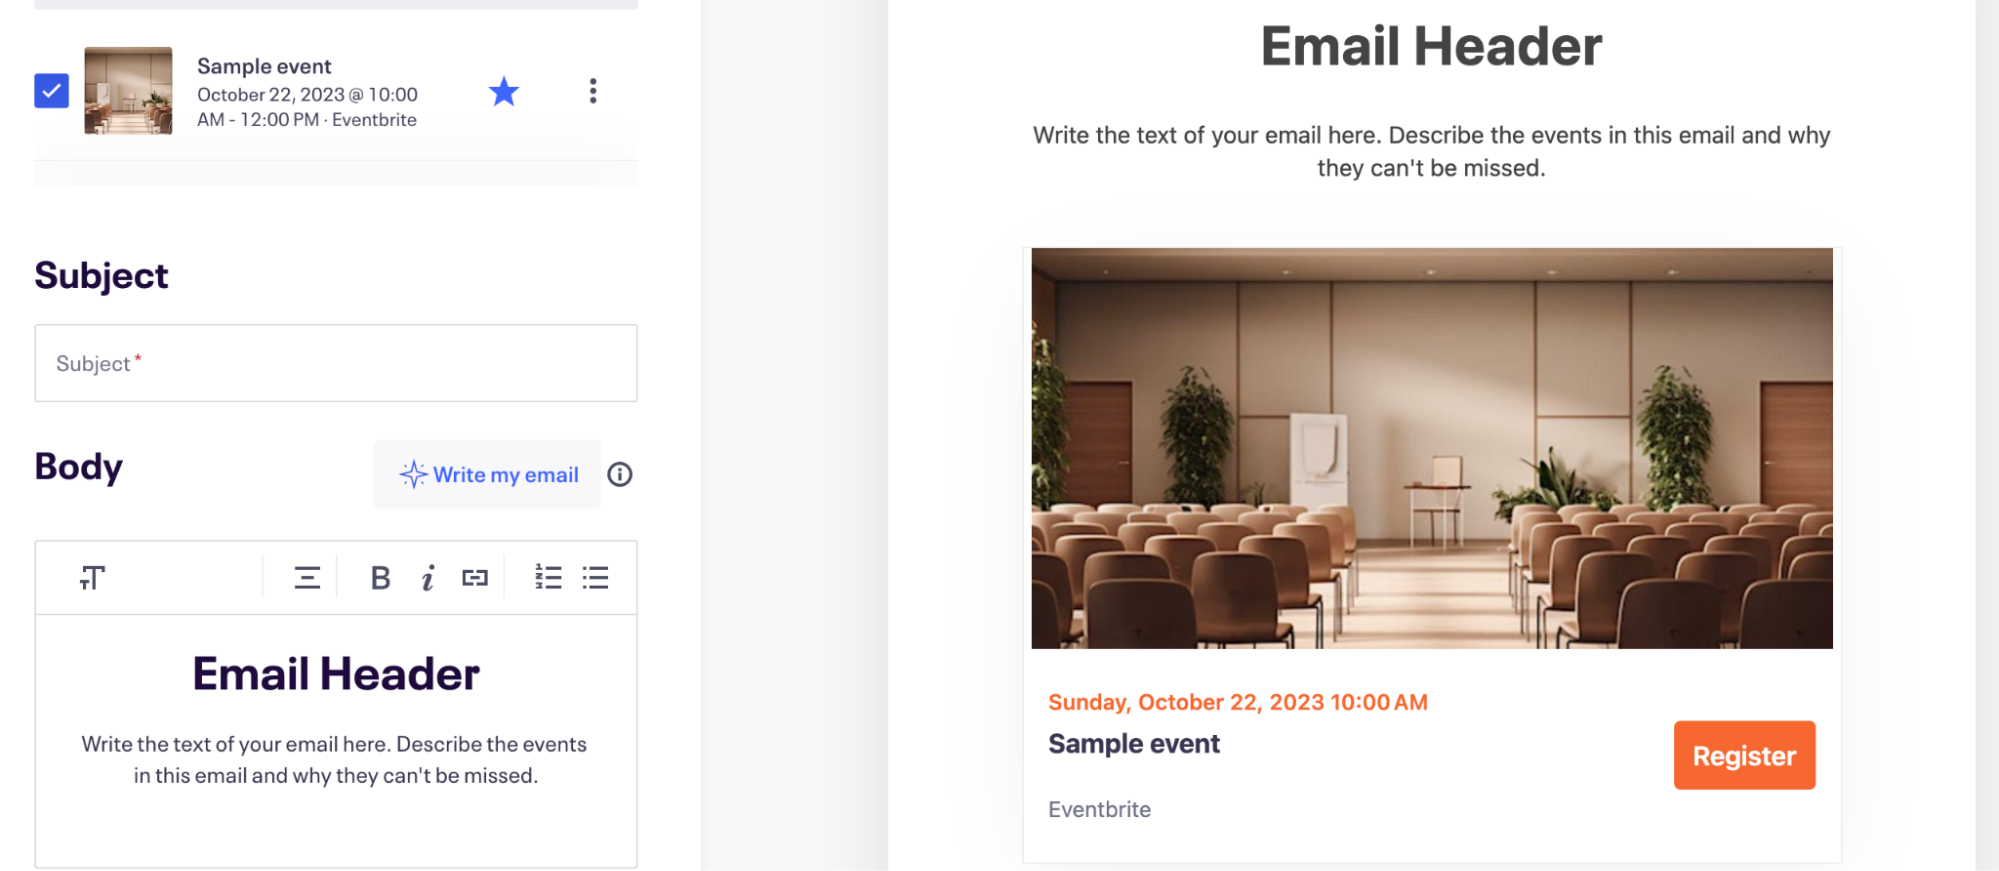 A screenshot Eventbrite's email platform